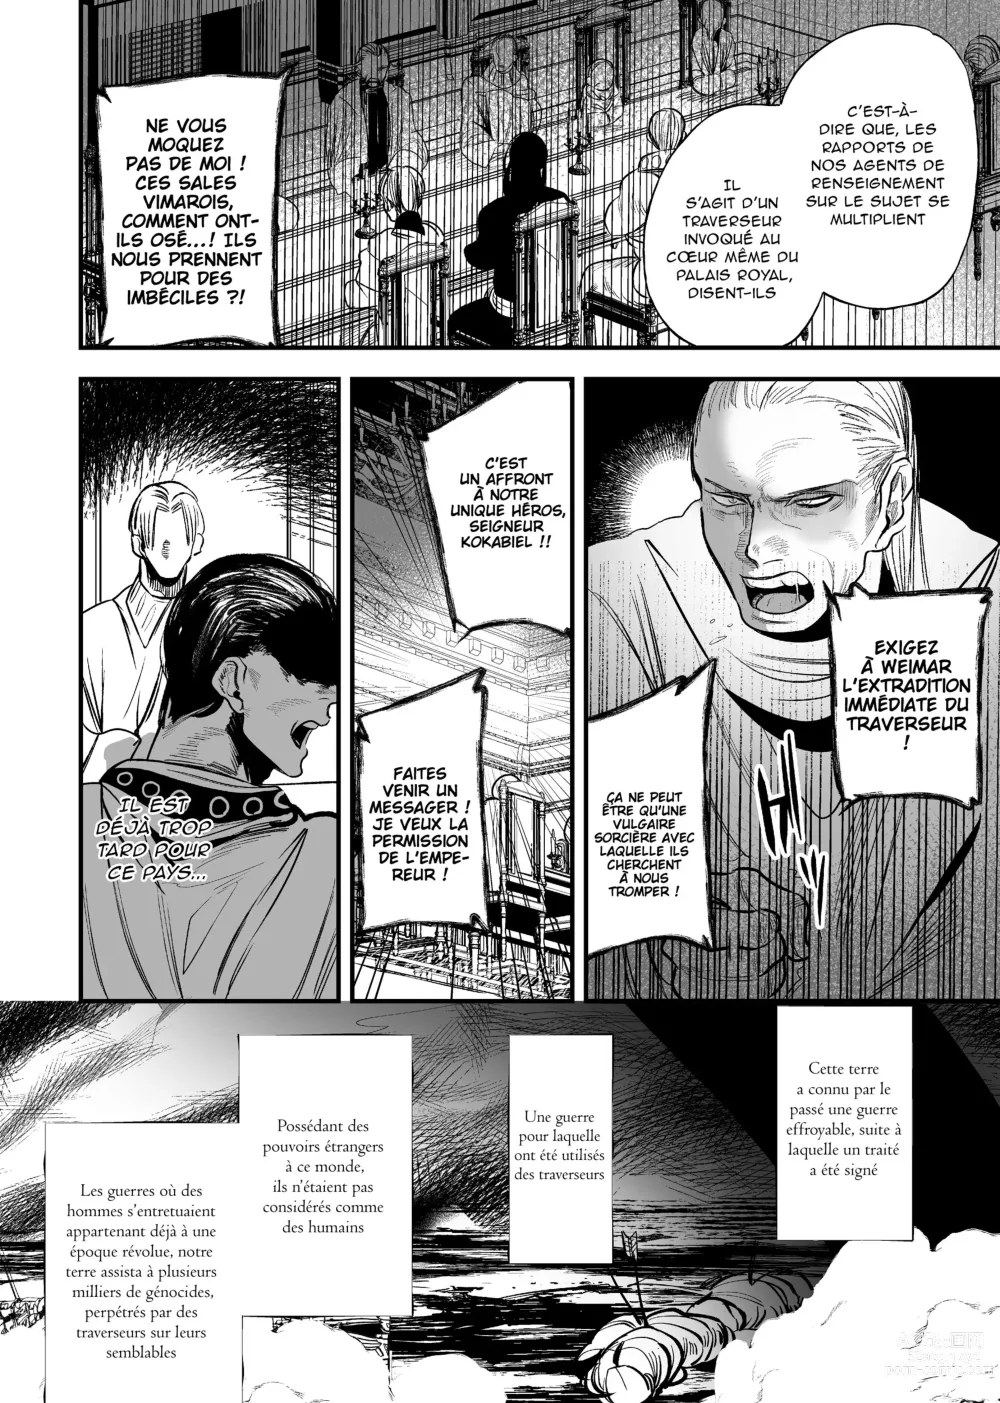 Page 6 of doujinshi Le jeune garçon qui m'a sauvée quand j'ai trébuché dans un autre monde était un meurtrier. 2